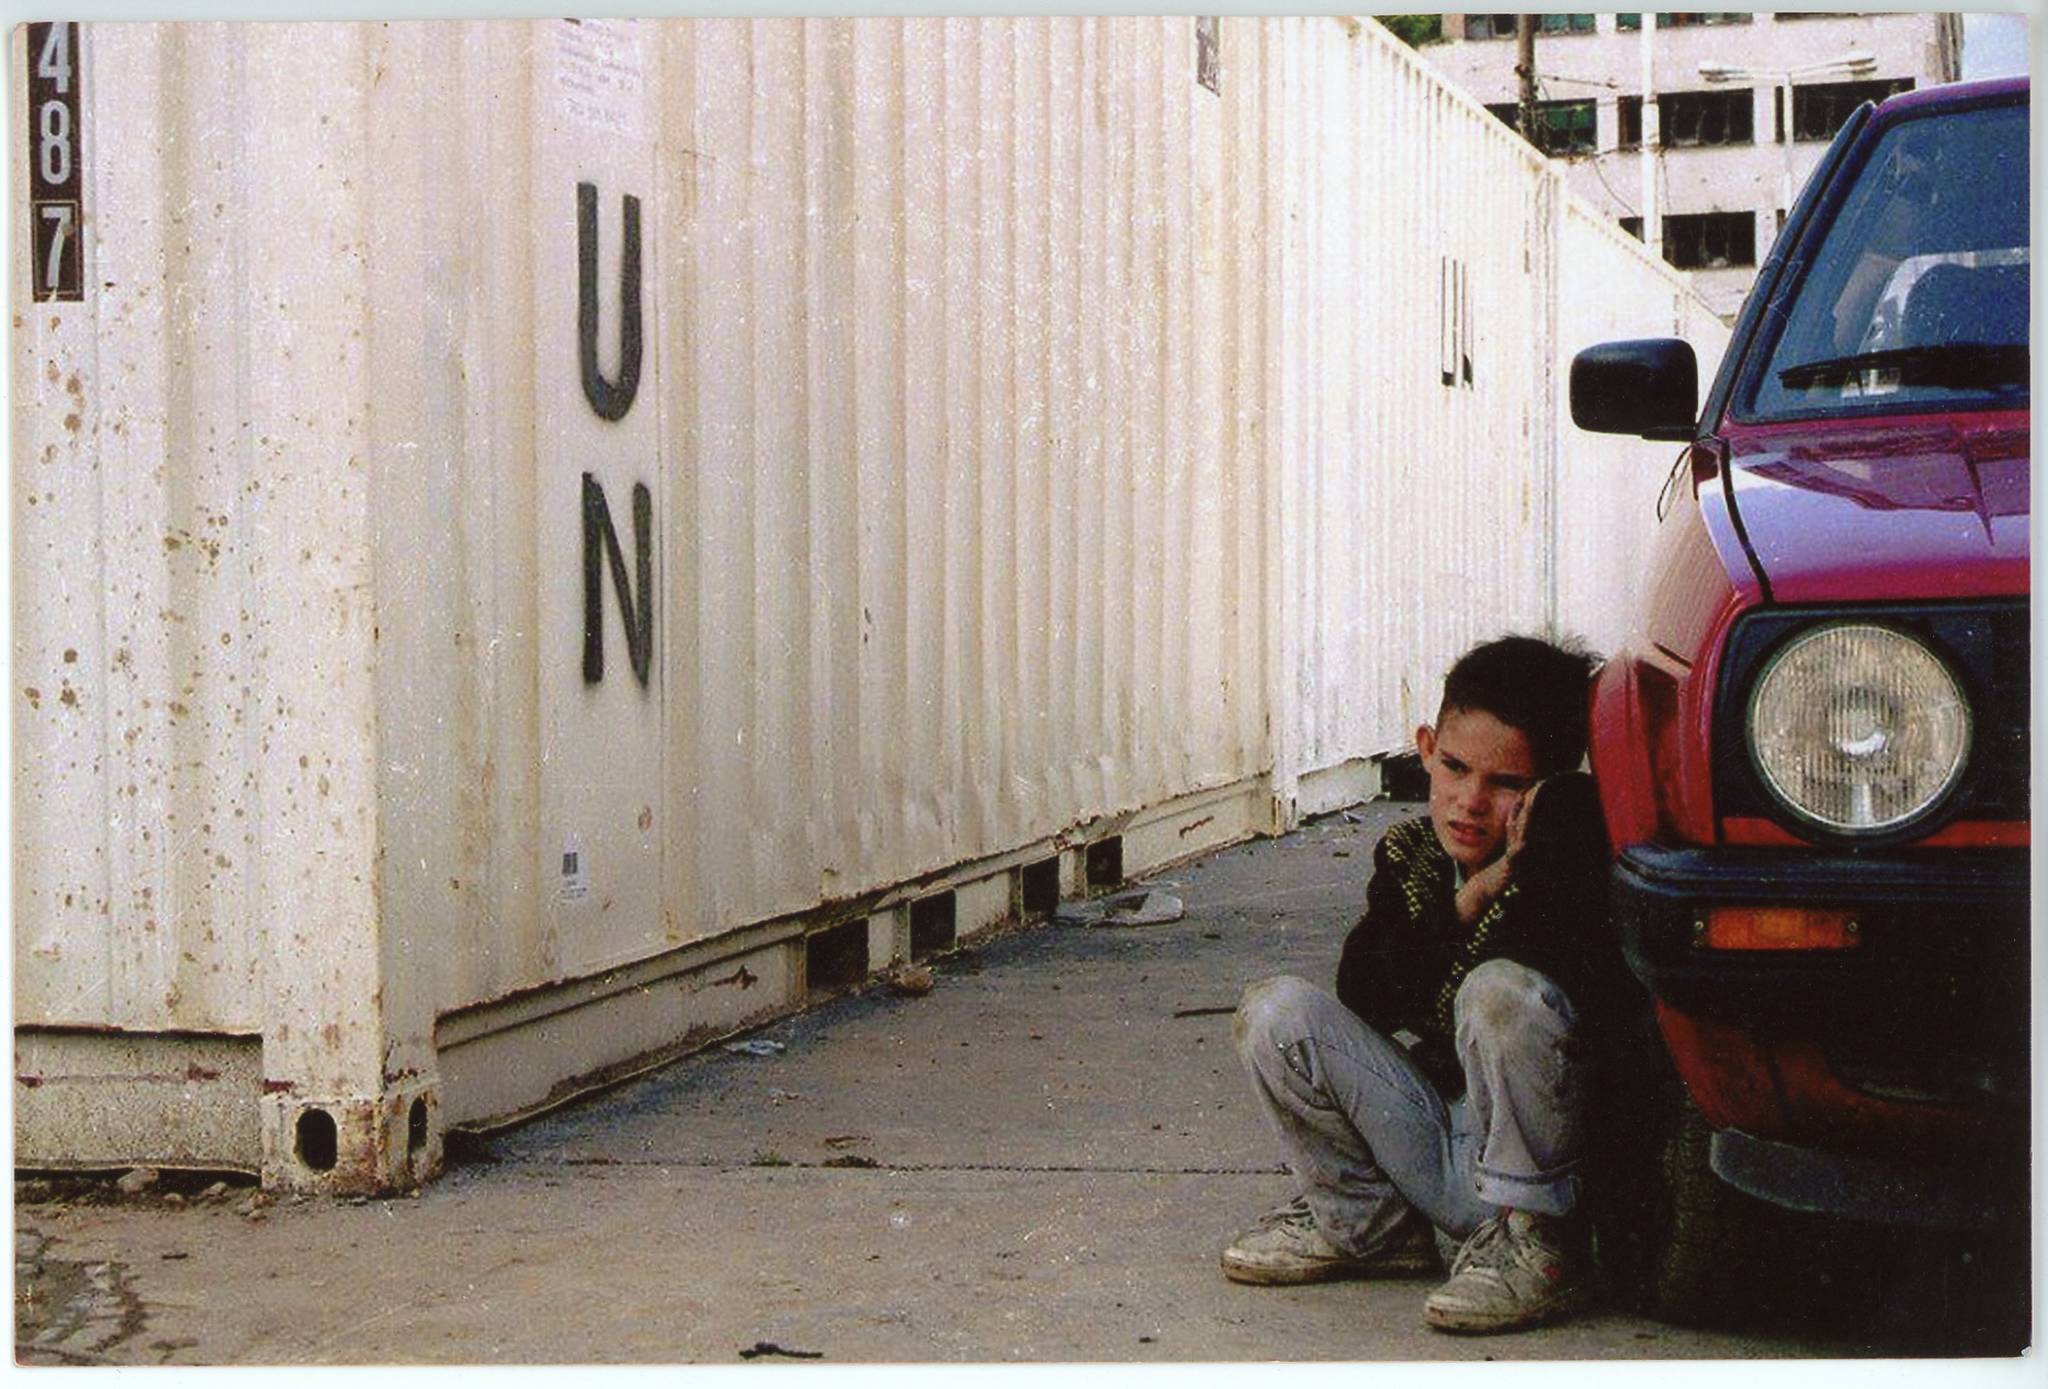 Kind versteckt sich hinter einem Auto. Im Hintergrund ist ein weißer UN Container zu sehen.